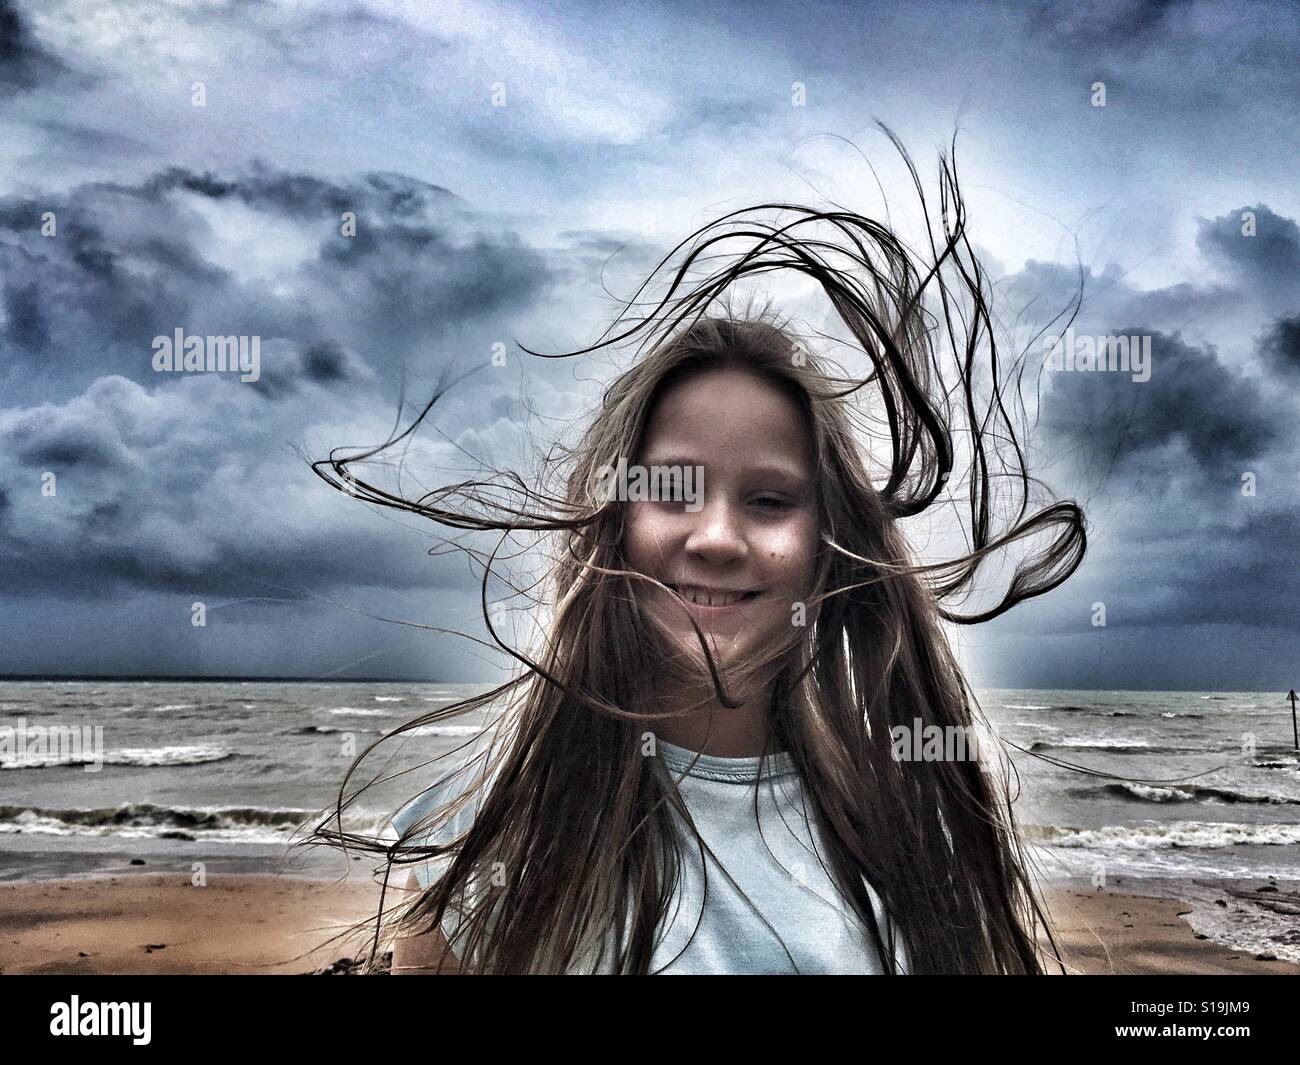 Pre-jovencita en la playa en un día ventoso. Foto de stock